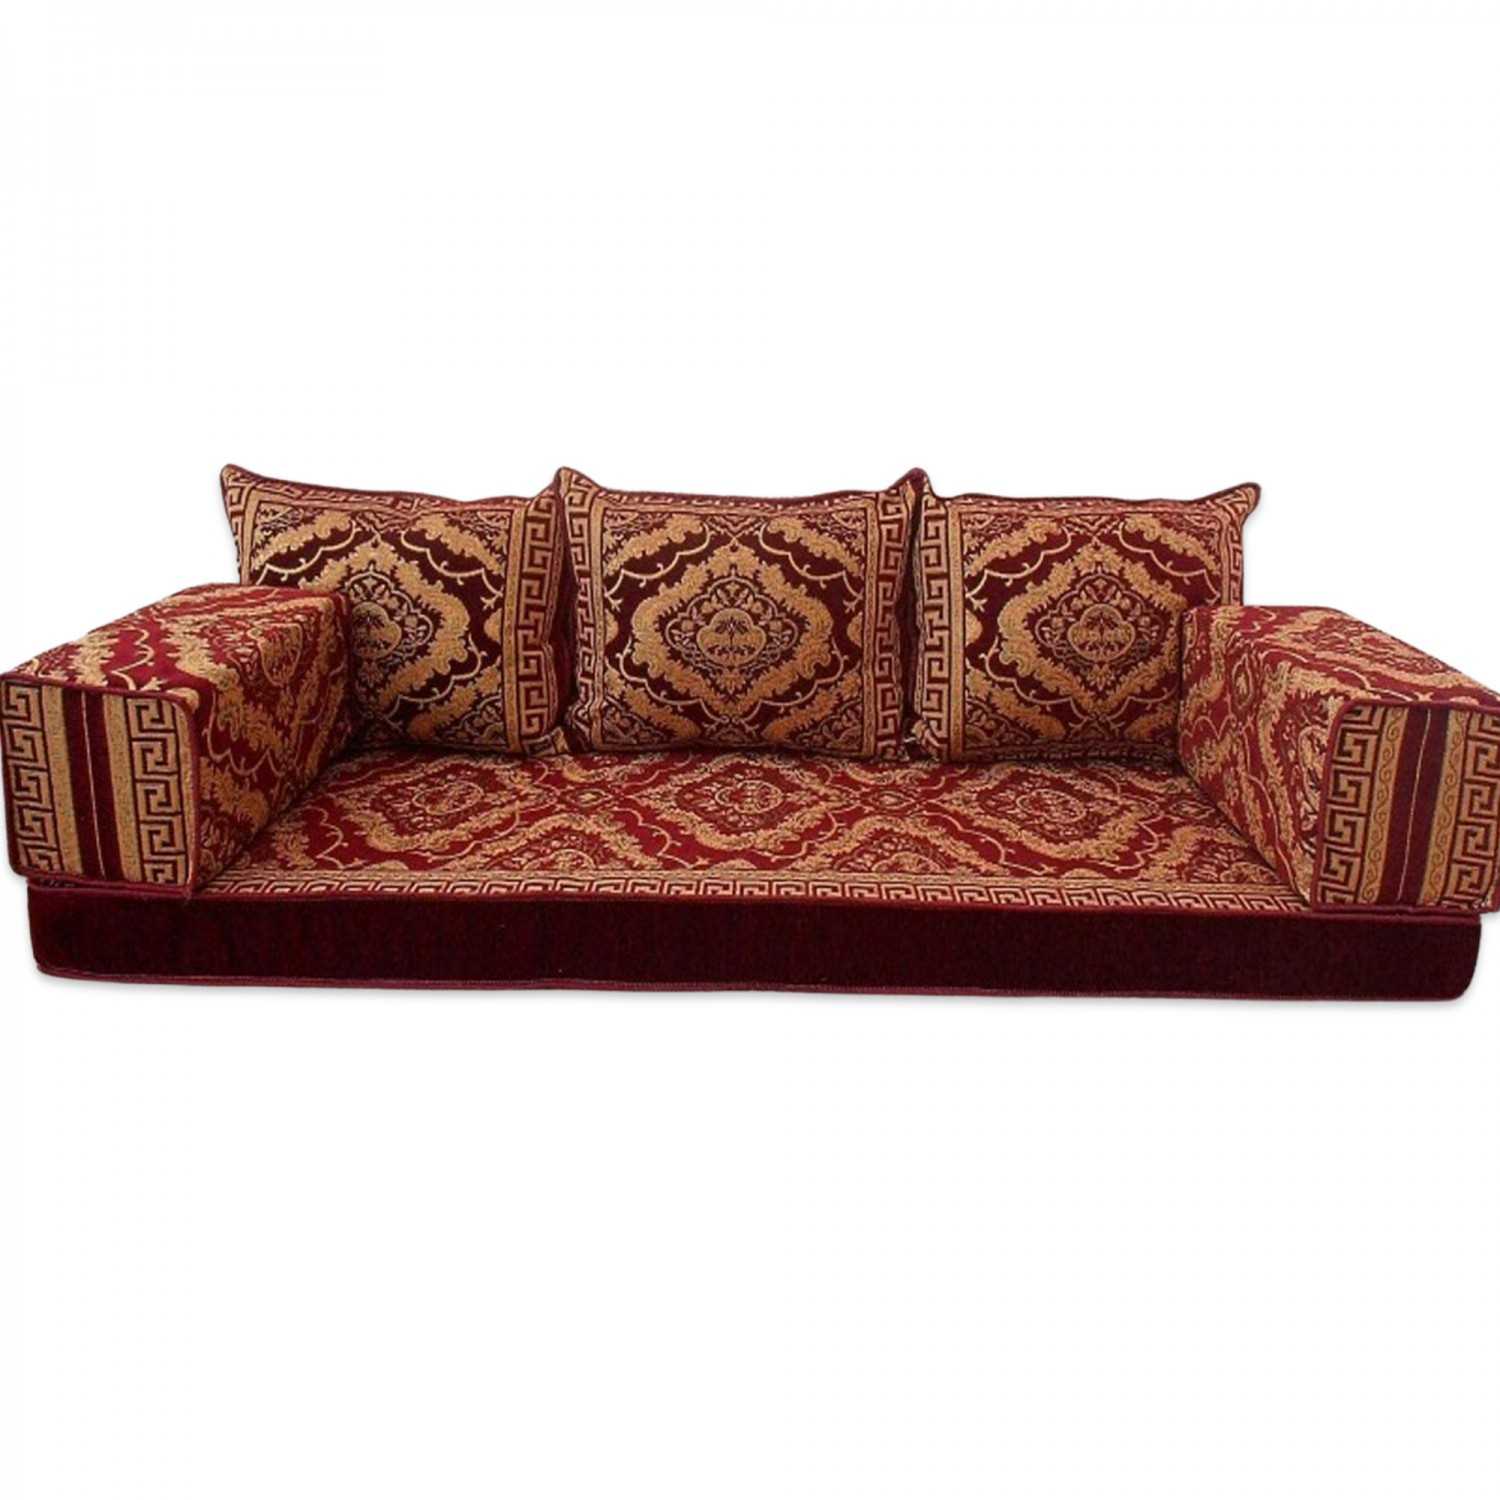 FLORAL-3 Three Seater Majlis Floor Sofa Set